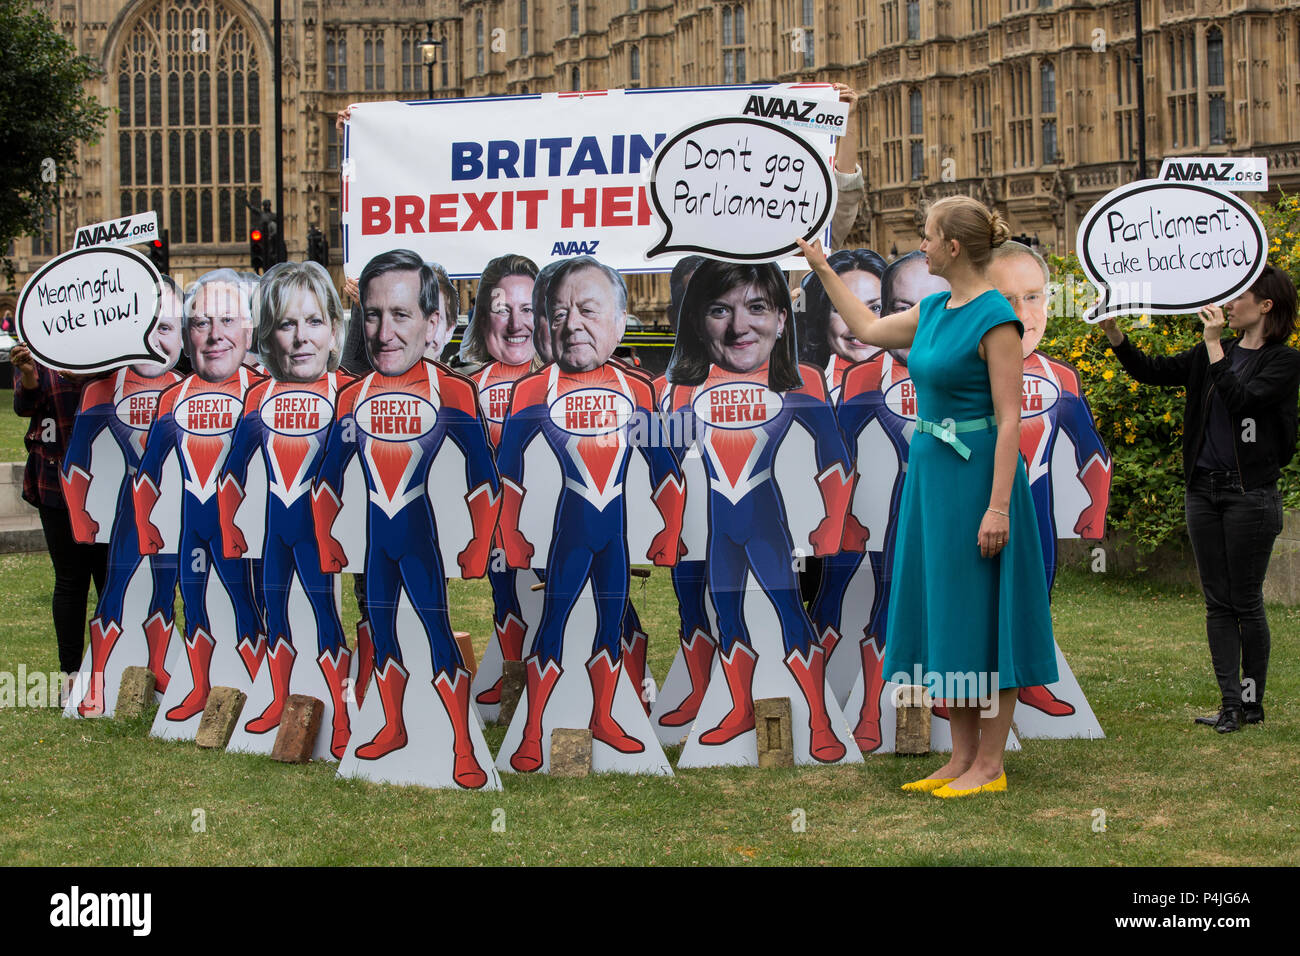 15 découpes de super-héros avec les visages des principaux députés rebelles conservateurs au Parlement européen, à la veille de l'extérieur de la Chambre des communes vote pour donner au Parlement un vote sur Brexit. Banque D'Images